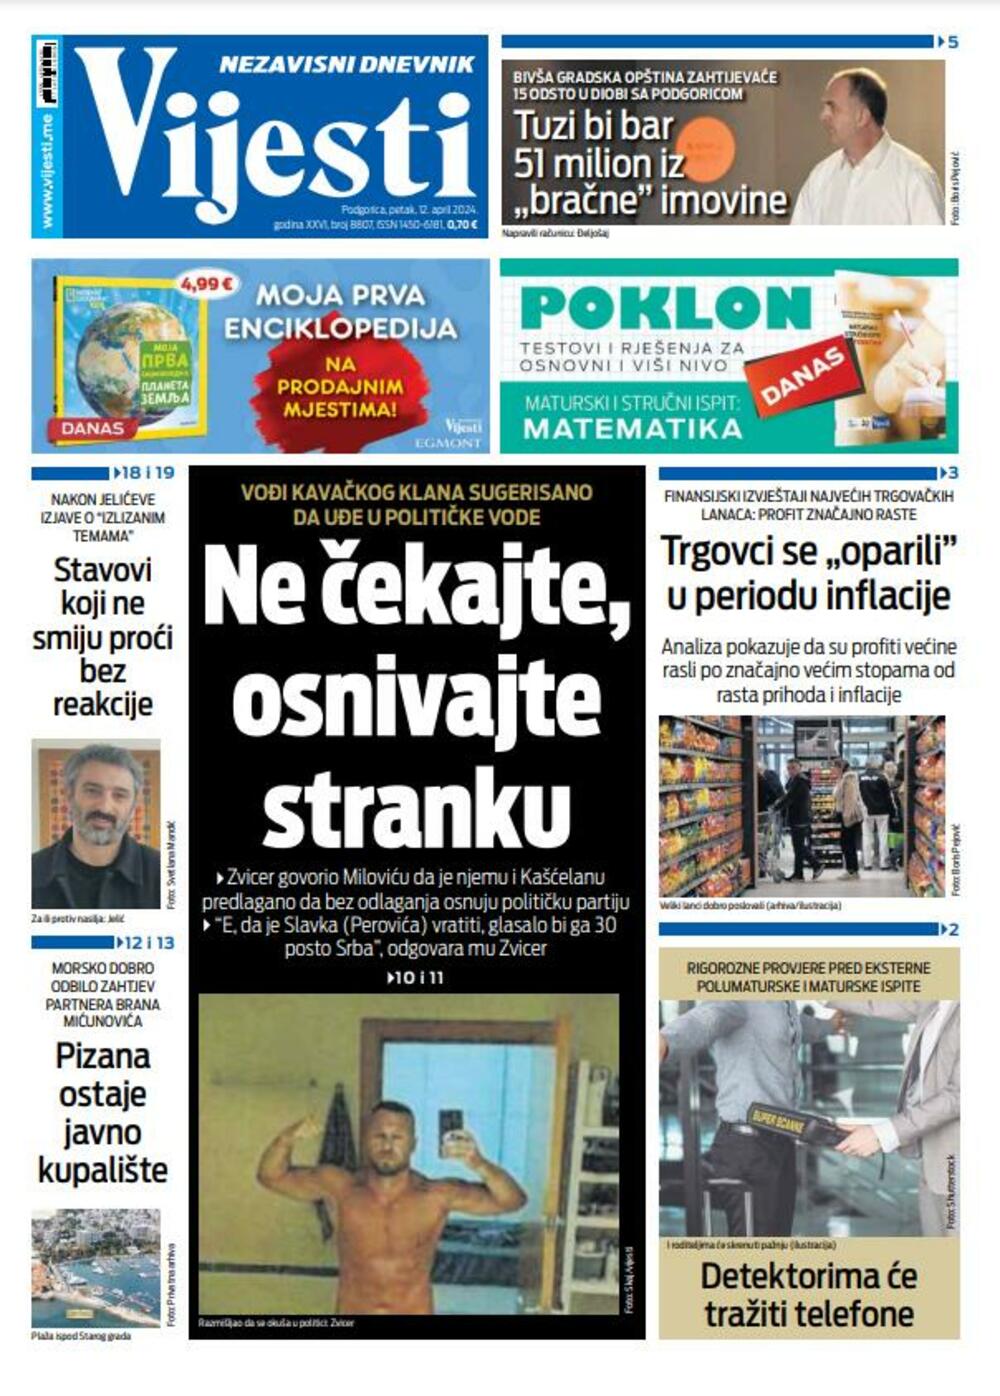 Naslovna strana "Vijesti" za 12. april 2024., Foto: Vijesti